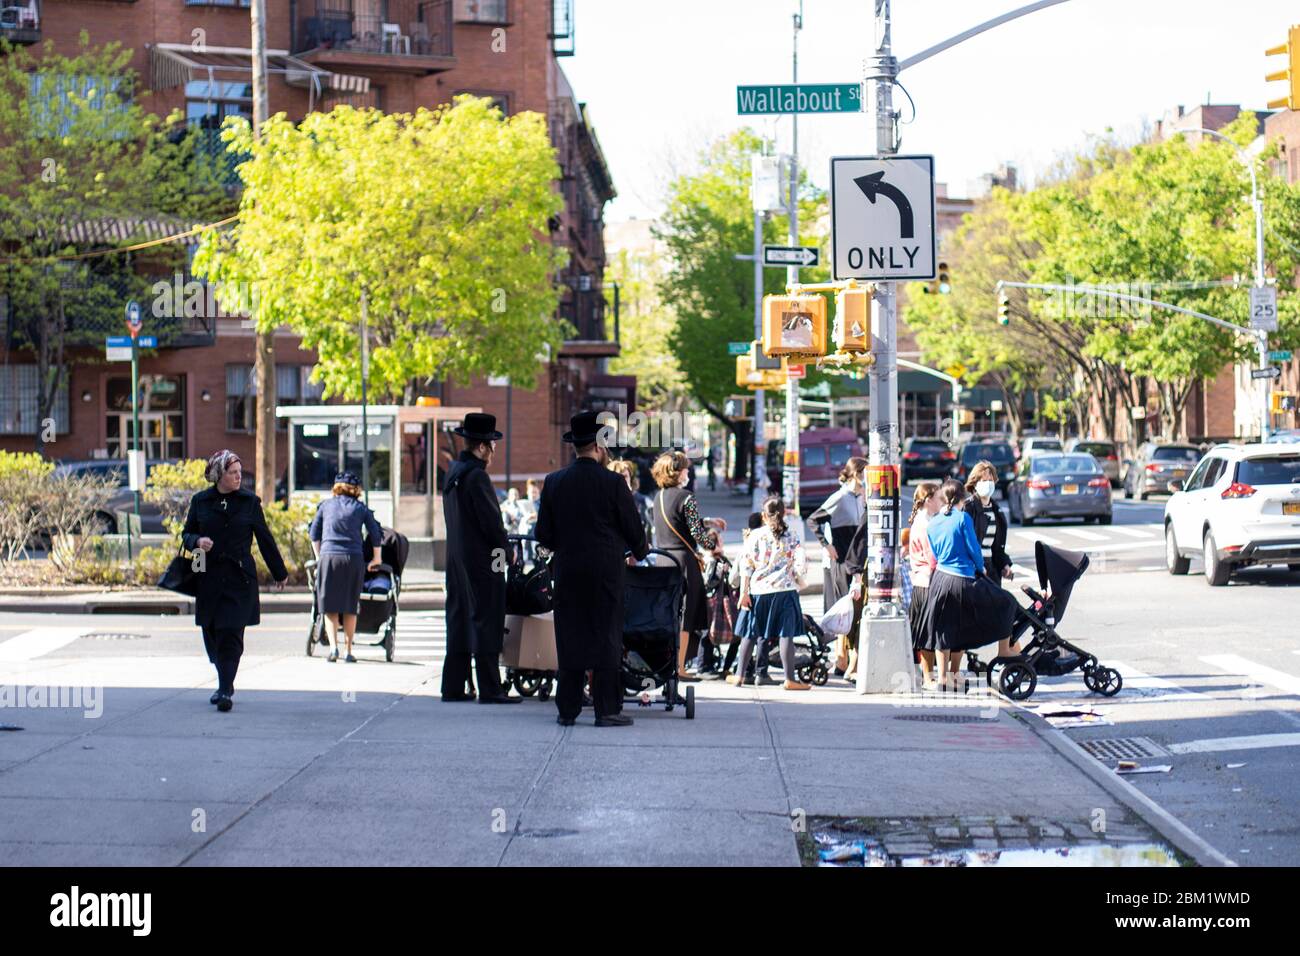 New York, USA - May 3 2020: Hasidic Jews Community and Children in Williamsburg Walking in Groups During Coronavirus COVID-19 Pandemic Stock Photo